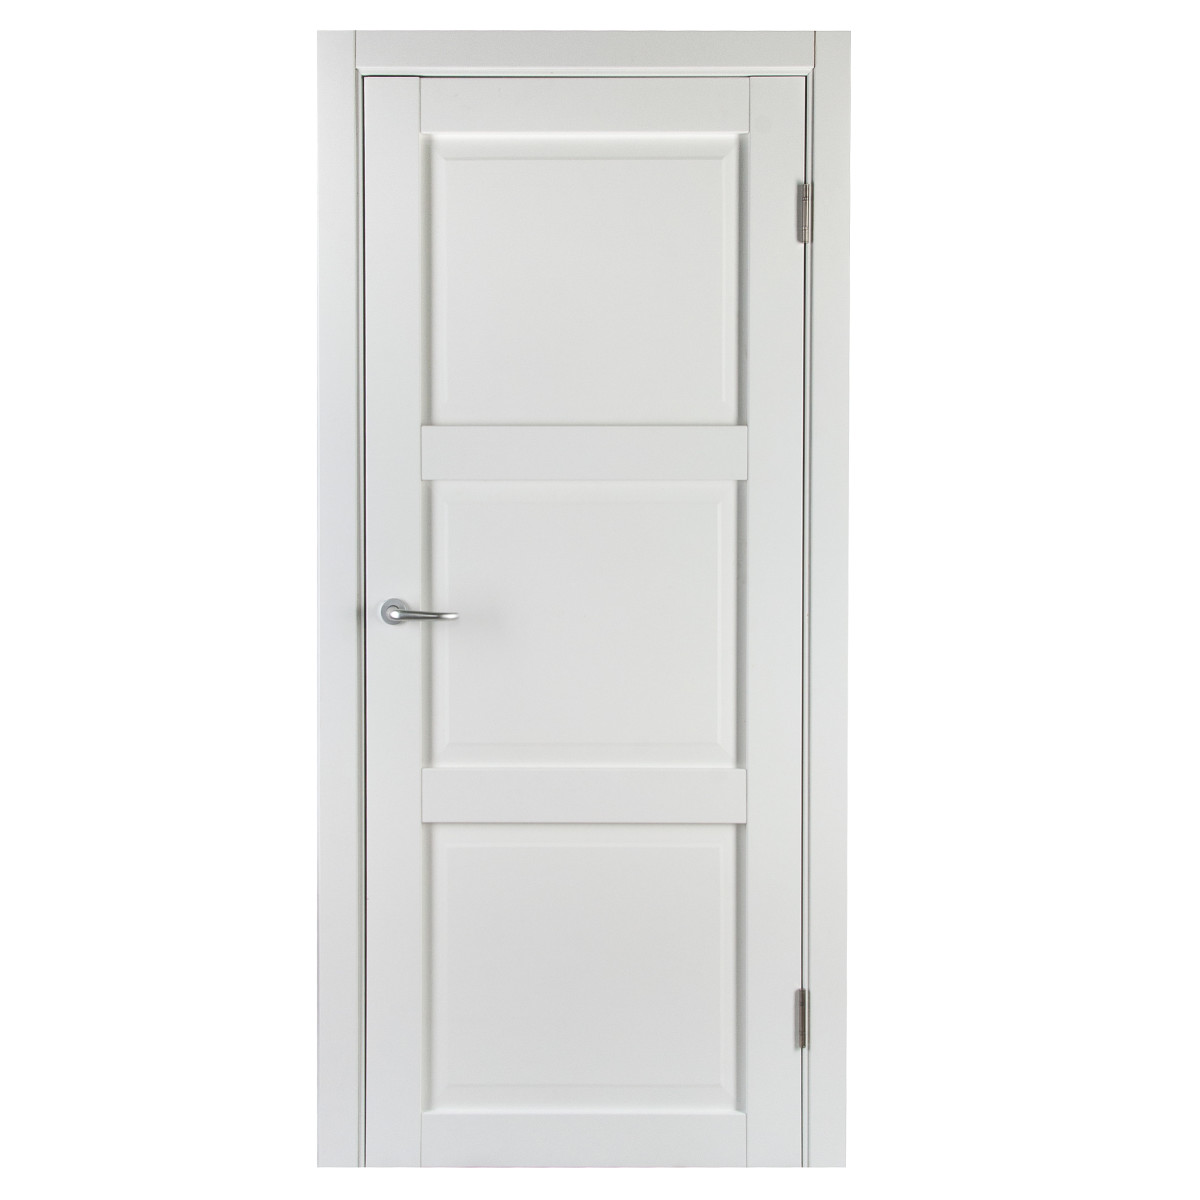 Дверь межкомнатная с фурнитурой Адажио 70х200 см, Hardflex, цвет белый